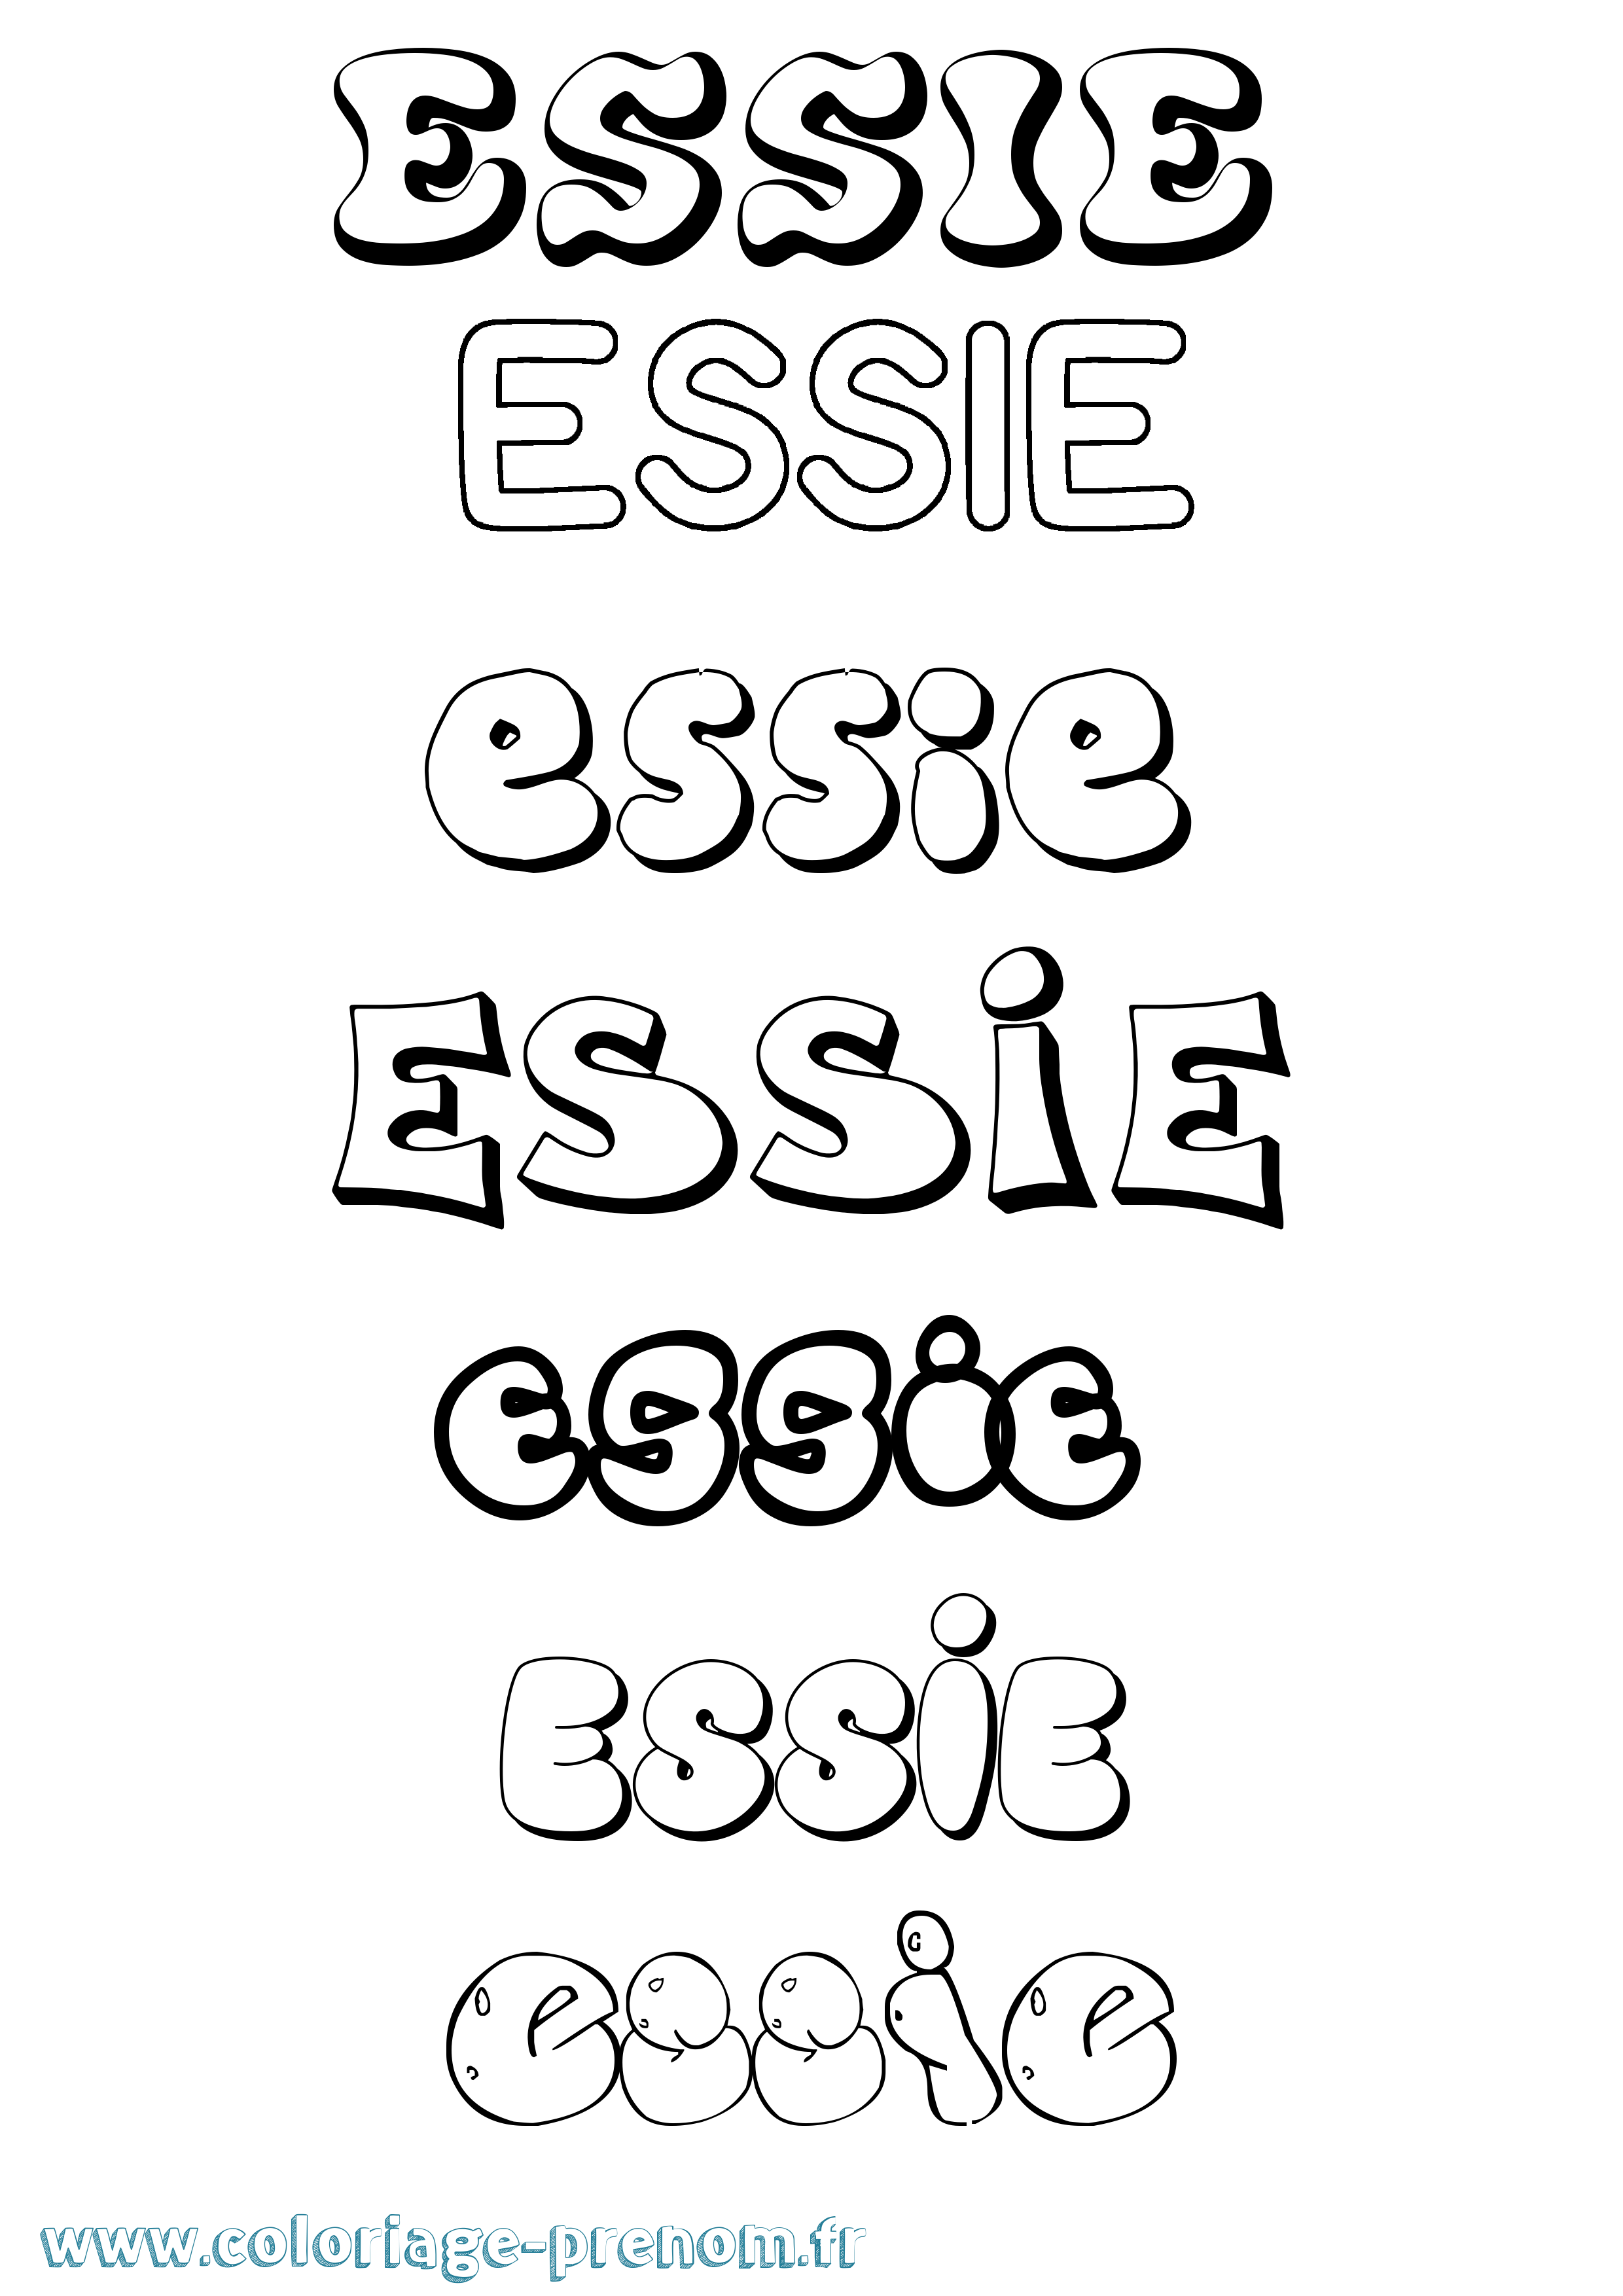 Coloriage prénom Essie Bubble